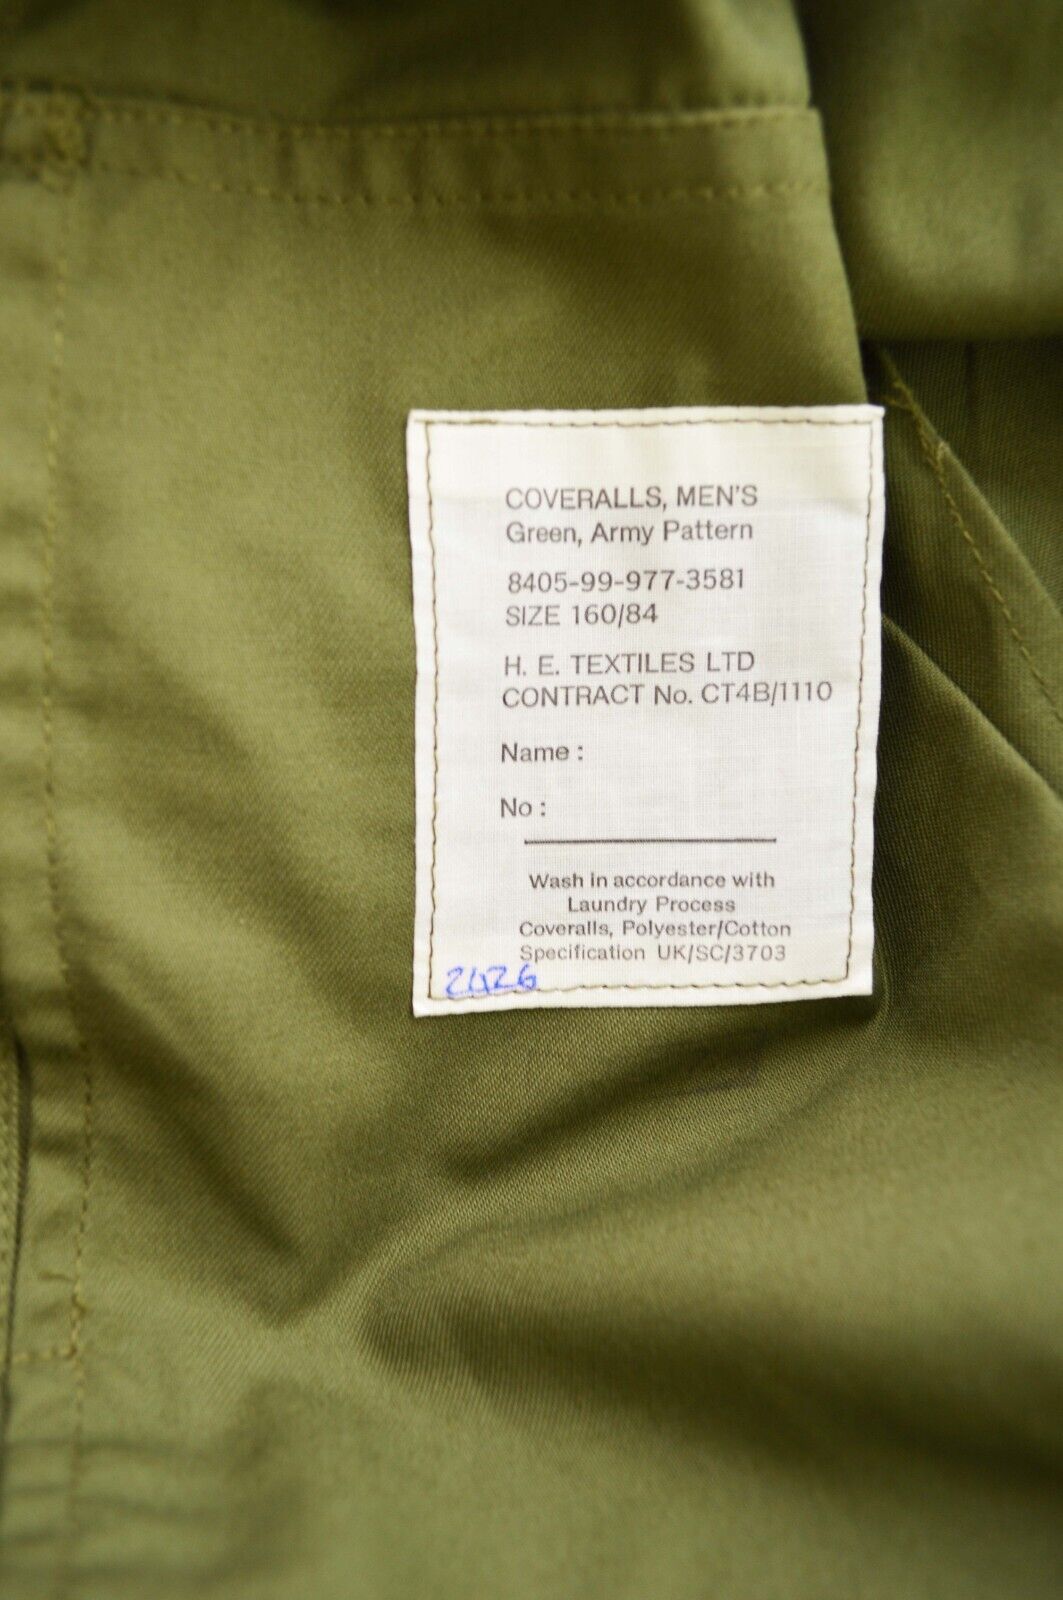 Unisex Vintage Green Military Jumpsuit